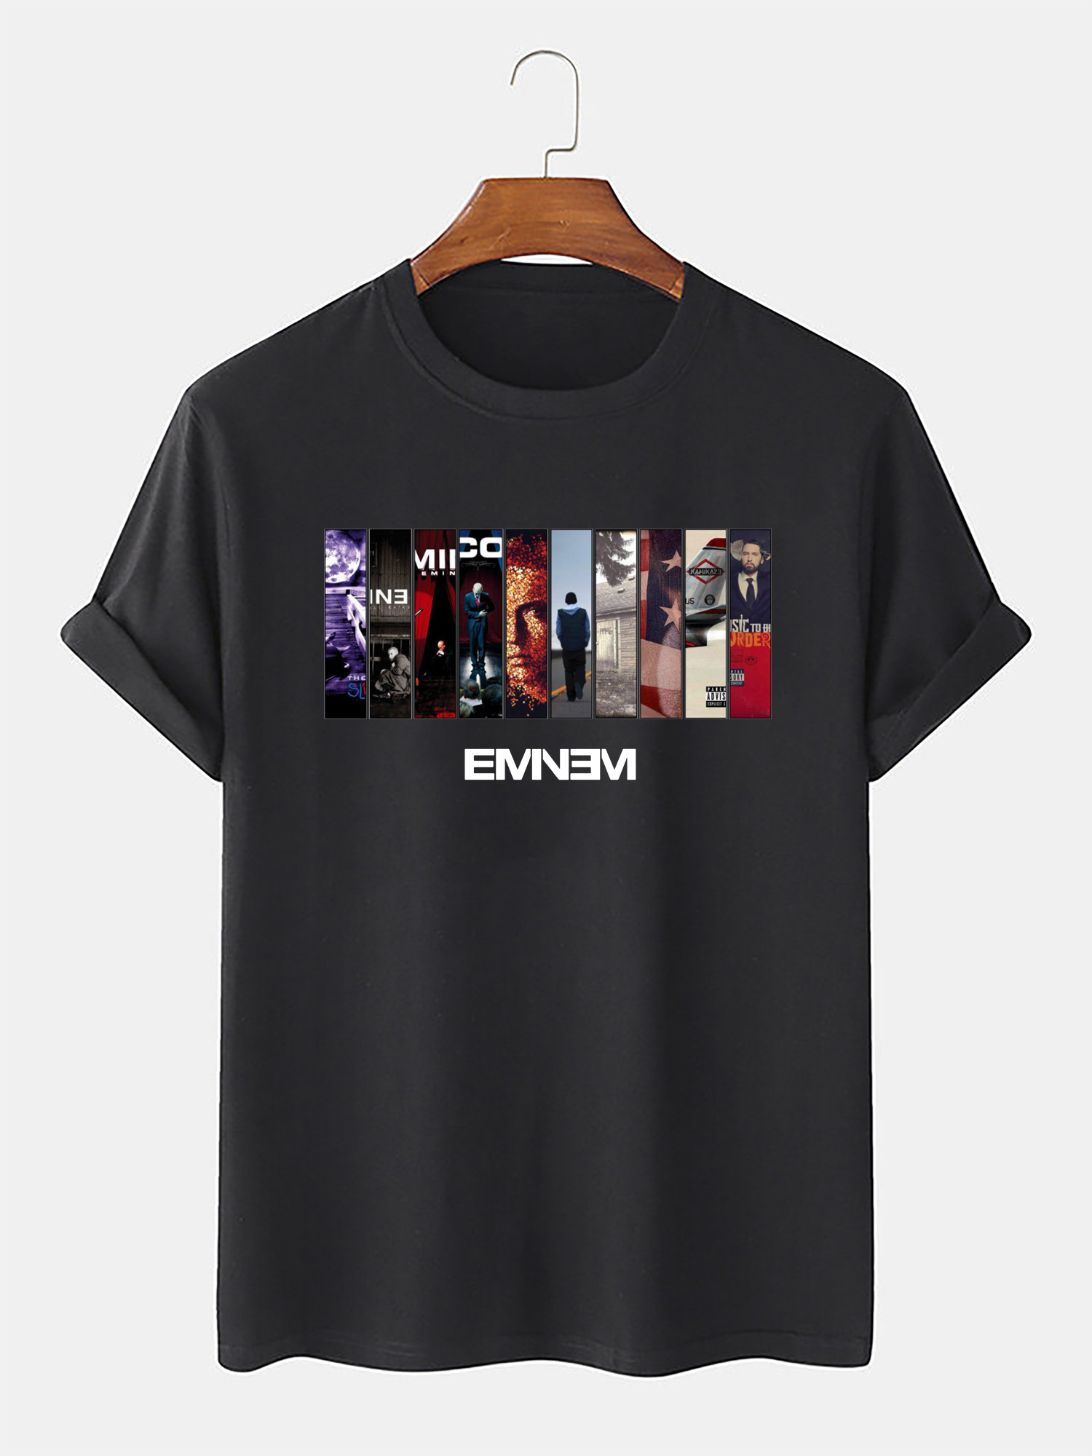 Eminem Slim Shady Rap Cool Fun T Shirt